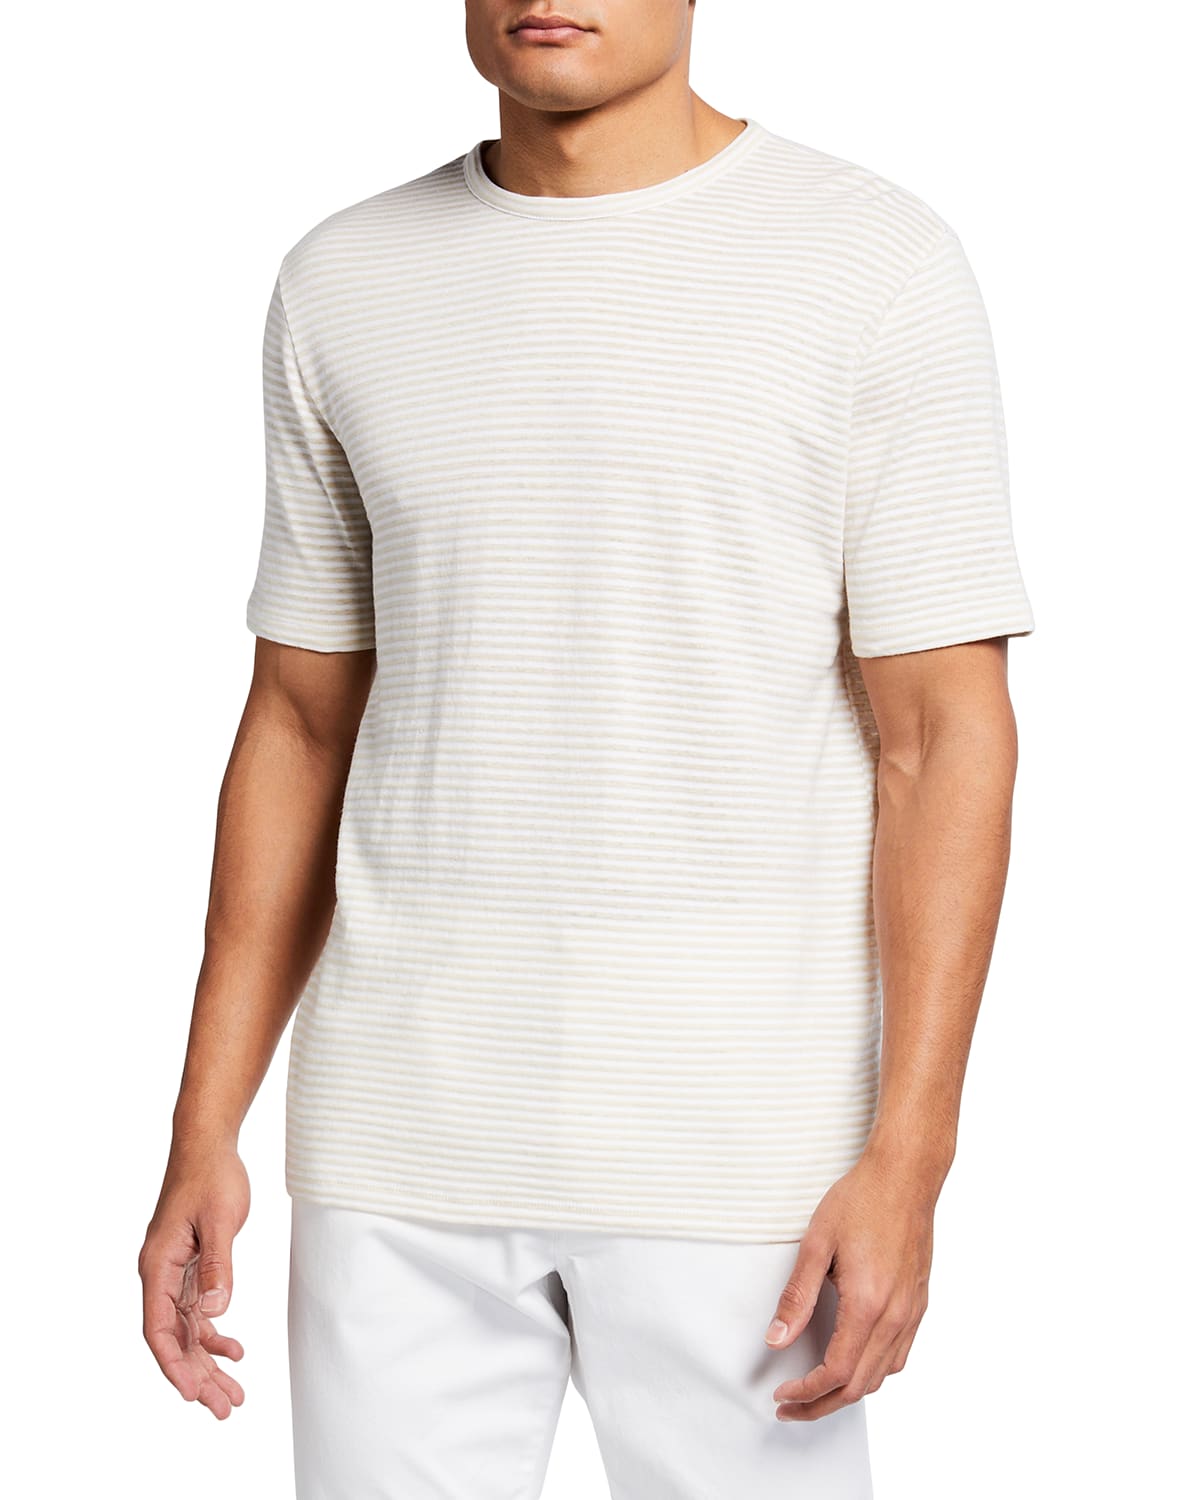 Vince Men's Striped Linen-Cotton T-Shirt